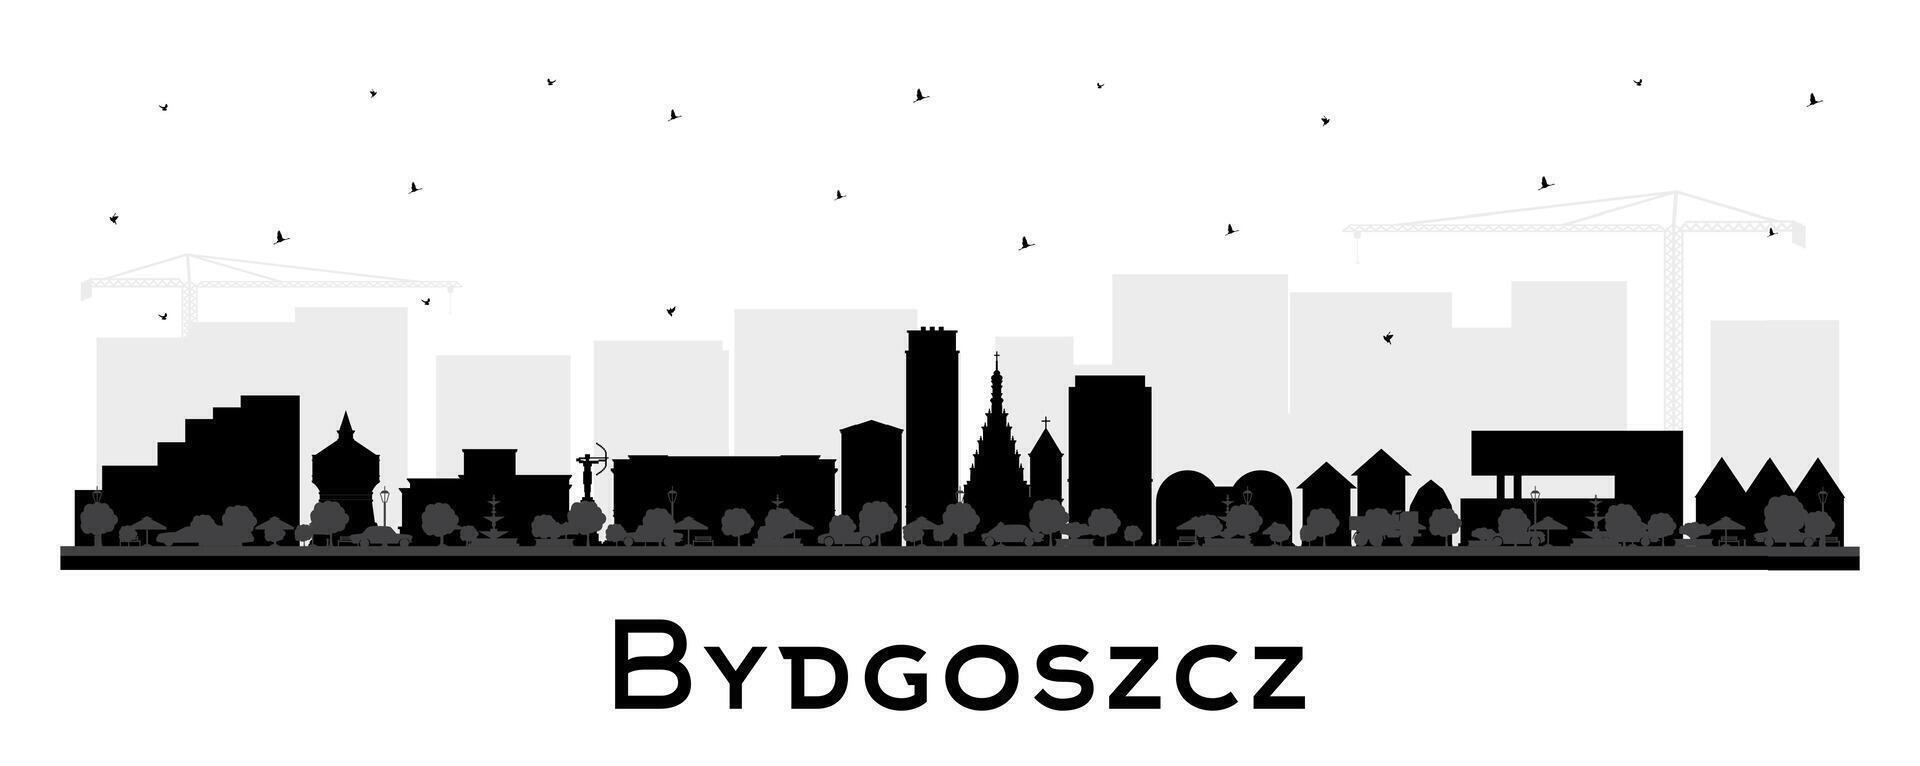 bydgoszcz Polonia ciudad horizonte silueta con negro edificios aislado en blanco. bydgoszcz paisaje urbano con puntos de referencia negocio y turismo concepto con histórico arquitectura. vector